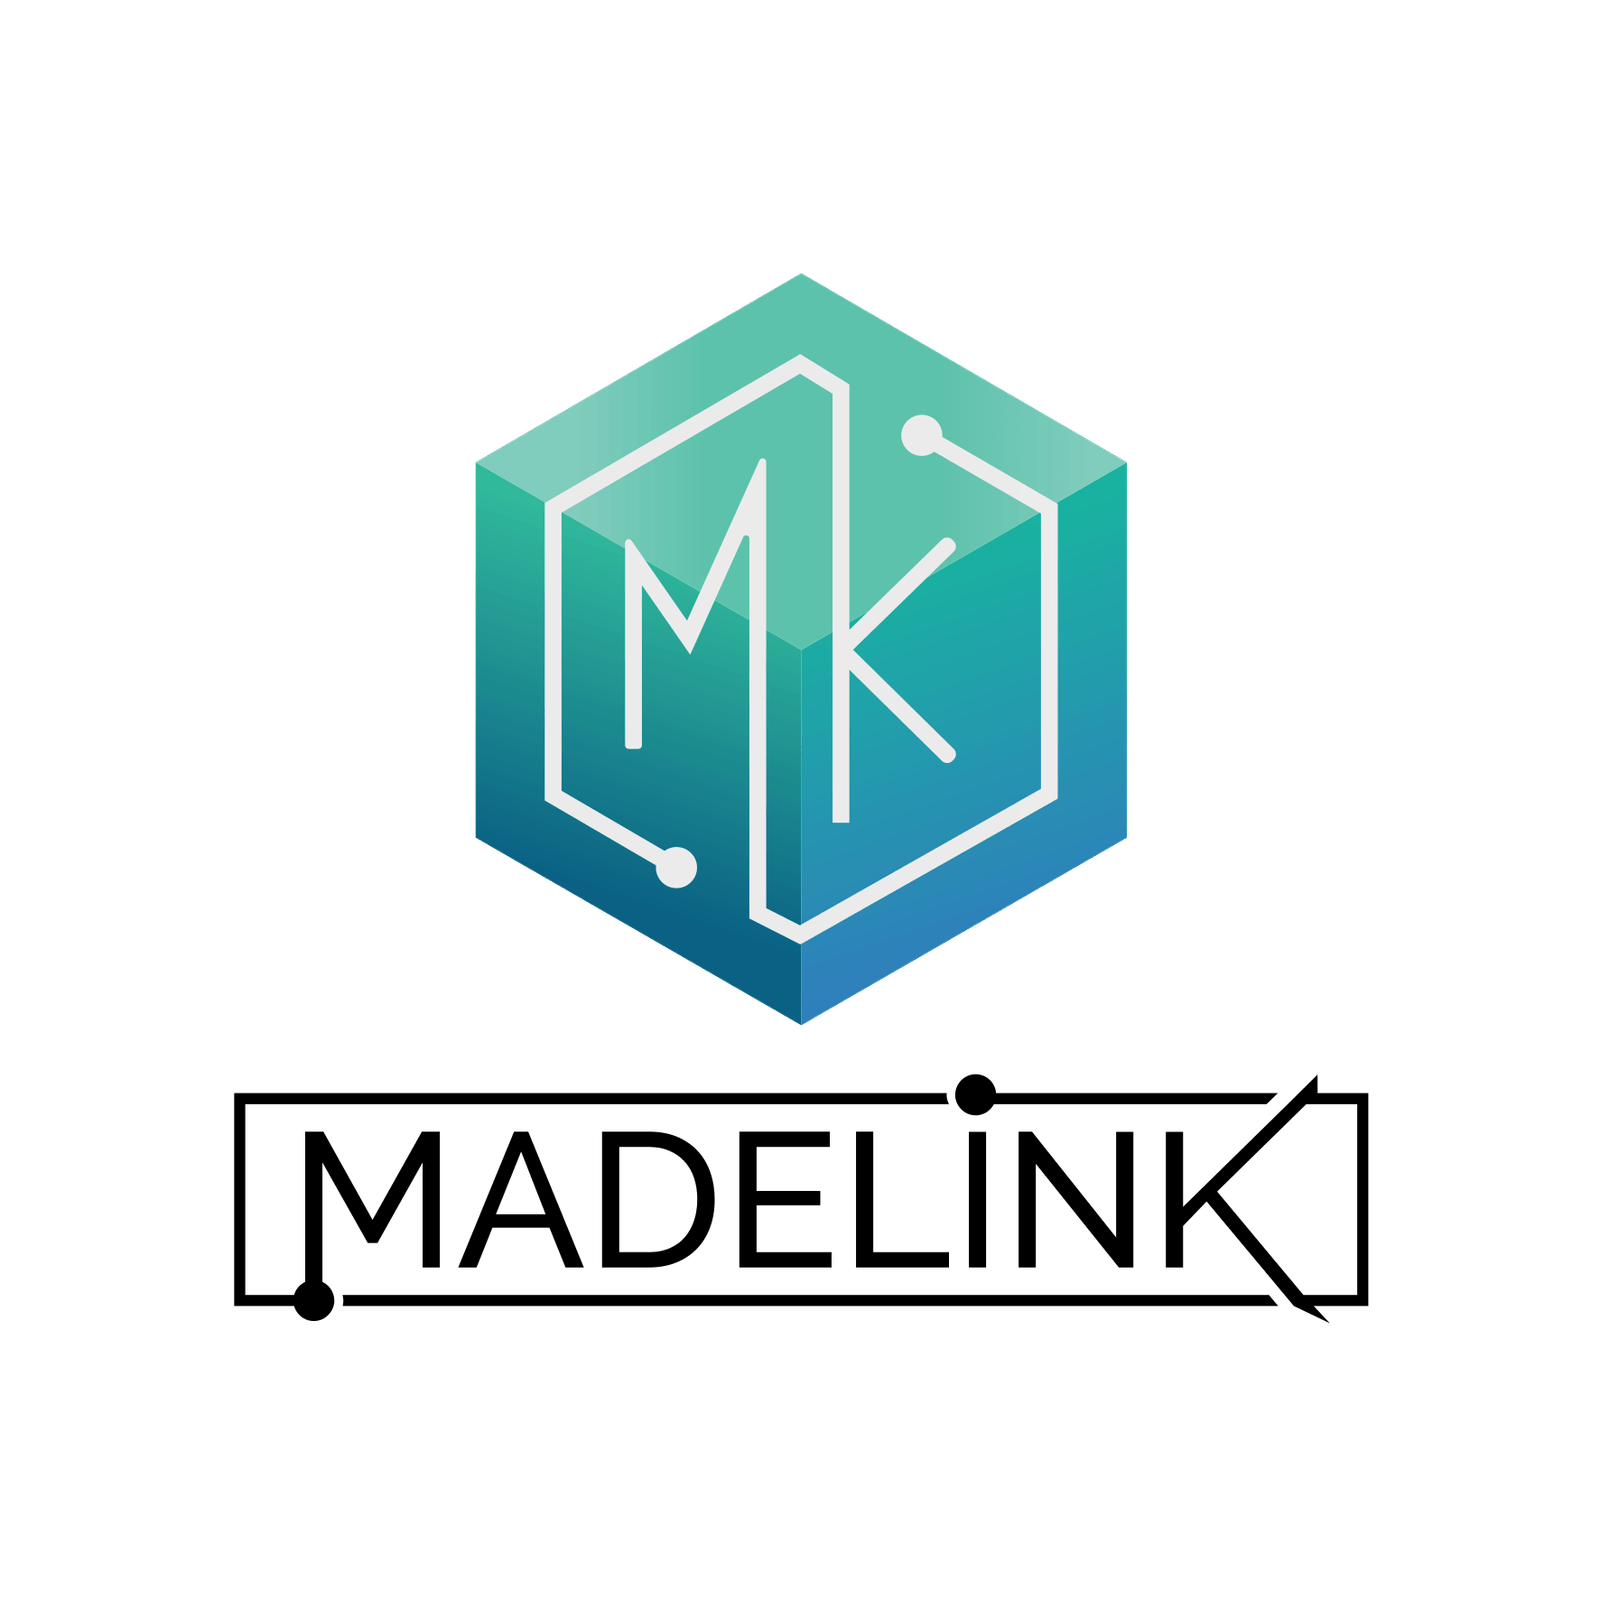 madelink